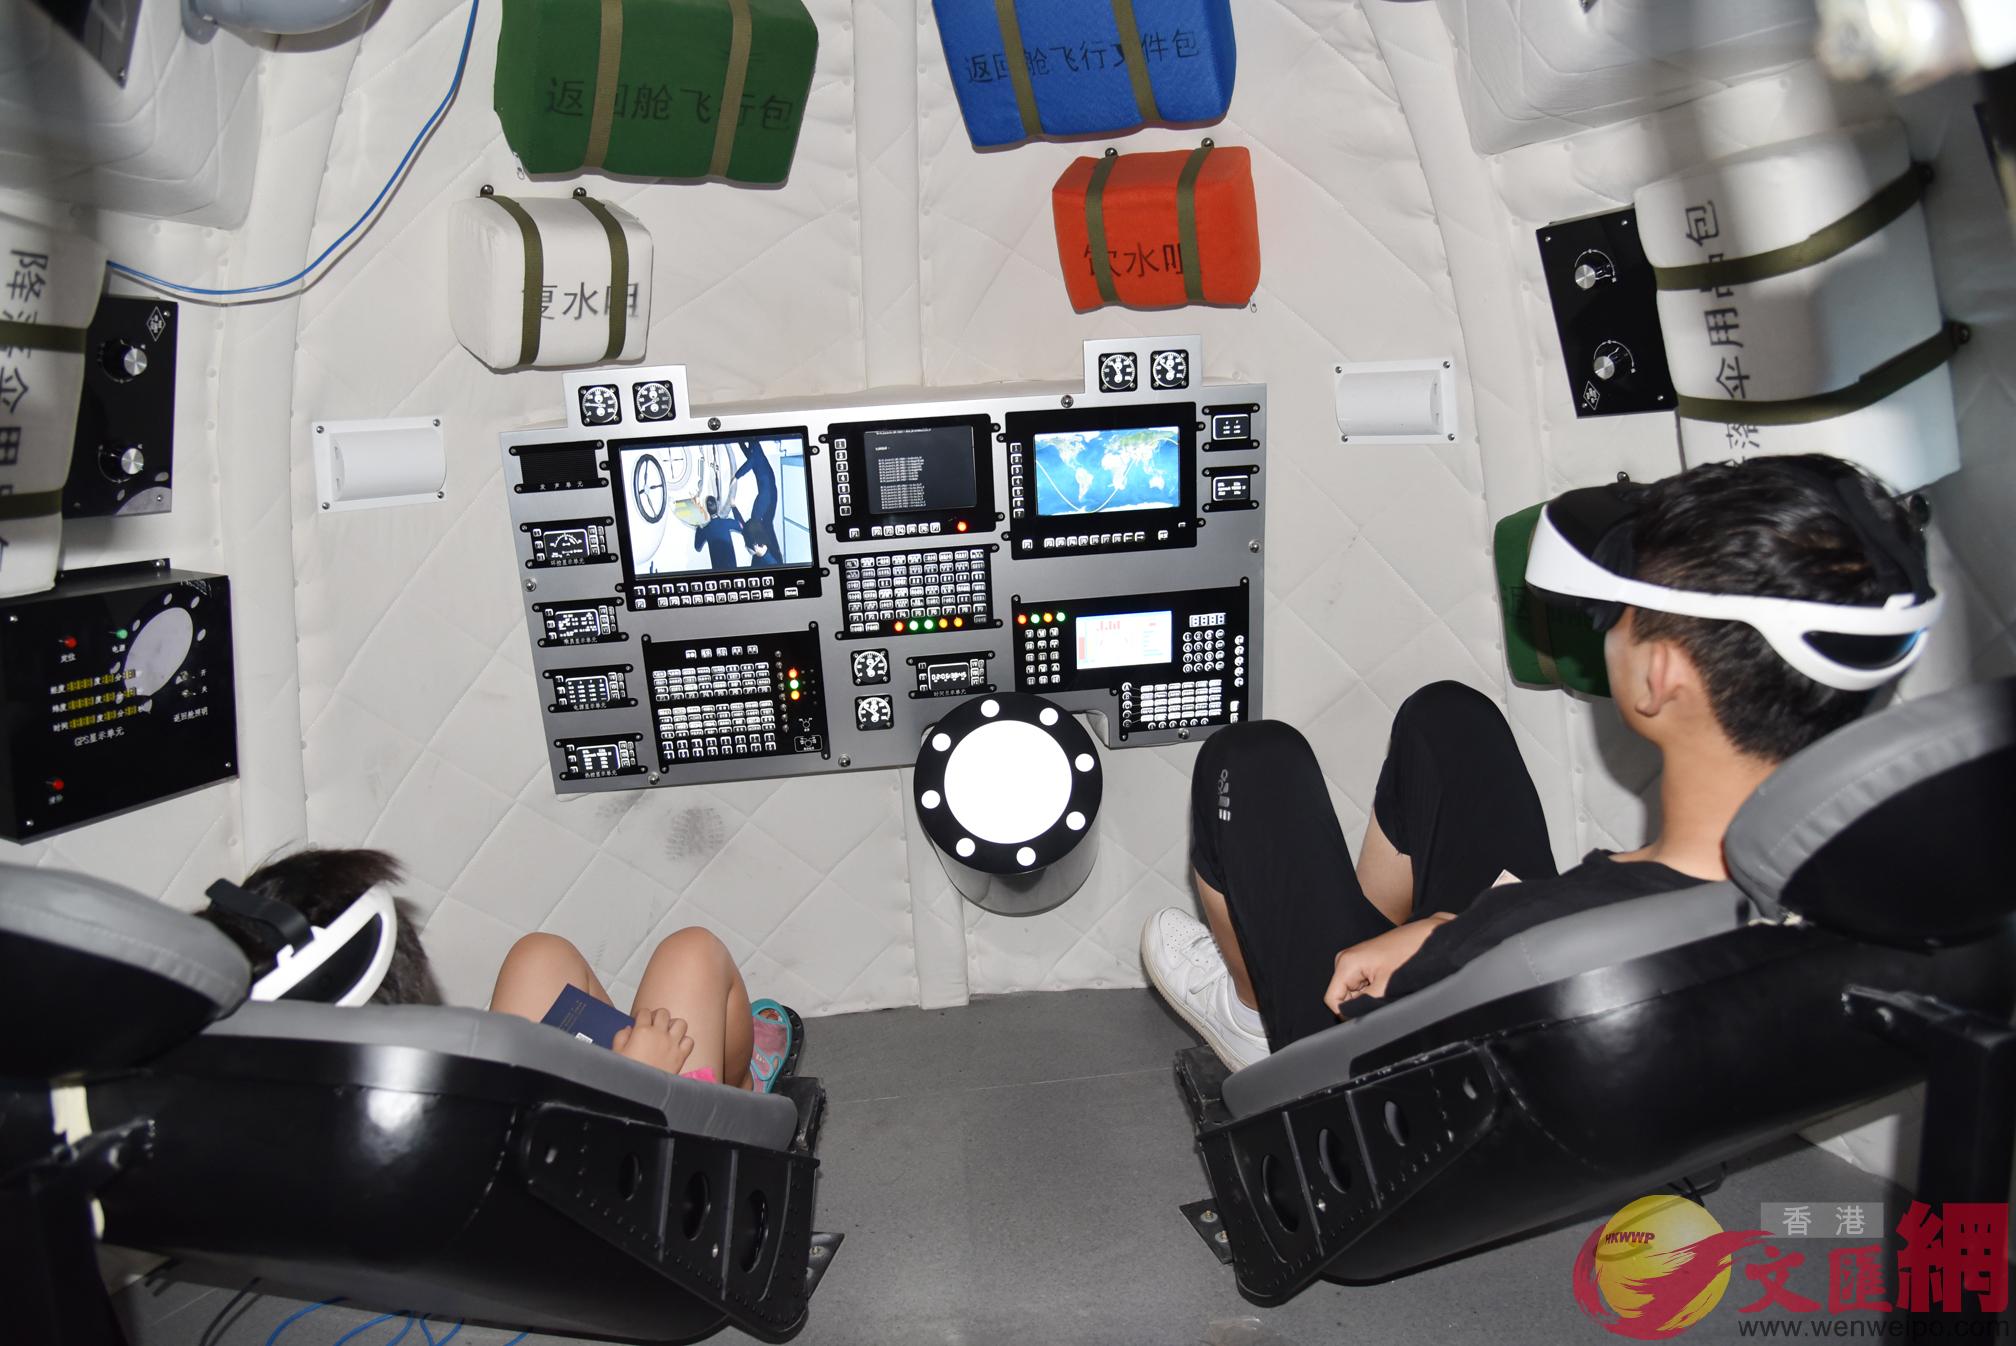 兩位西安學生正在用VR設備體驗宇航員太空生活C]記者李陽波攝^